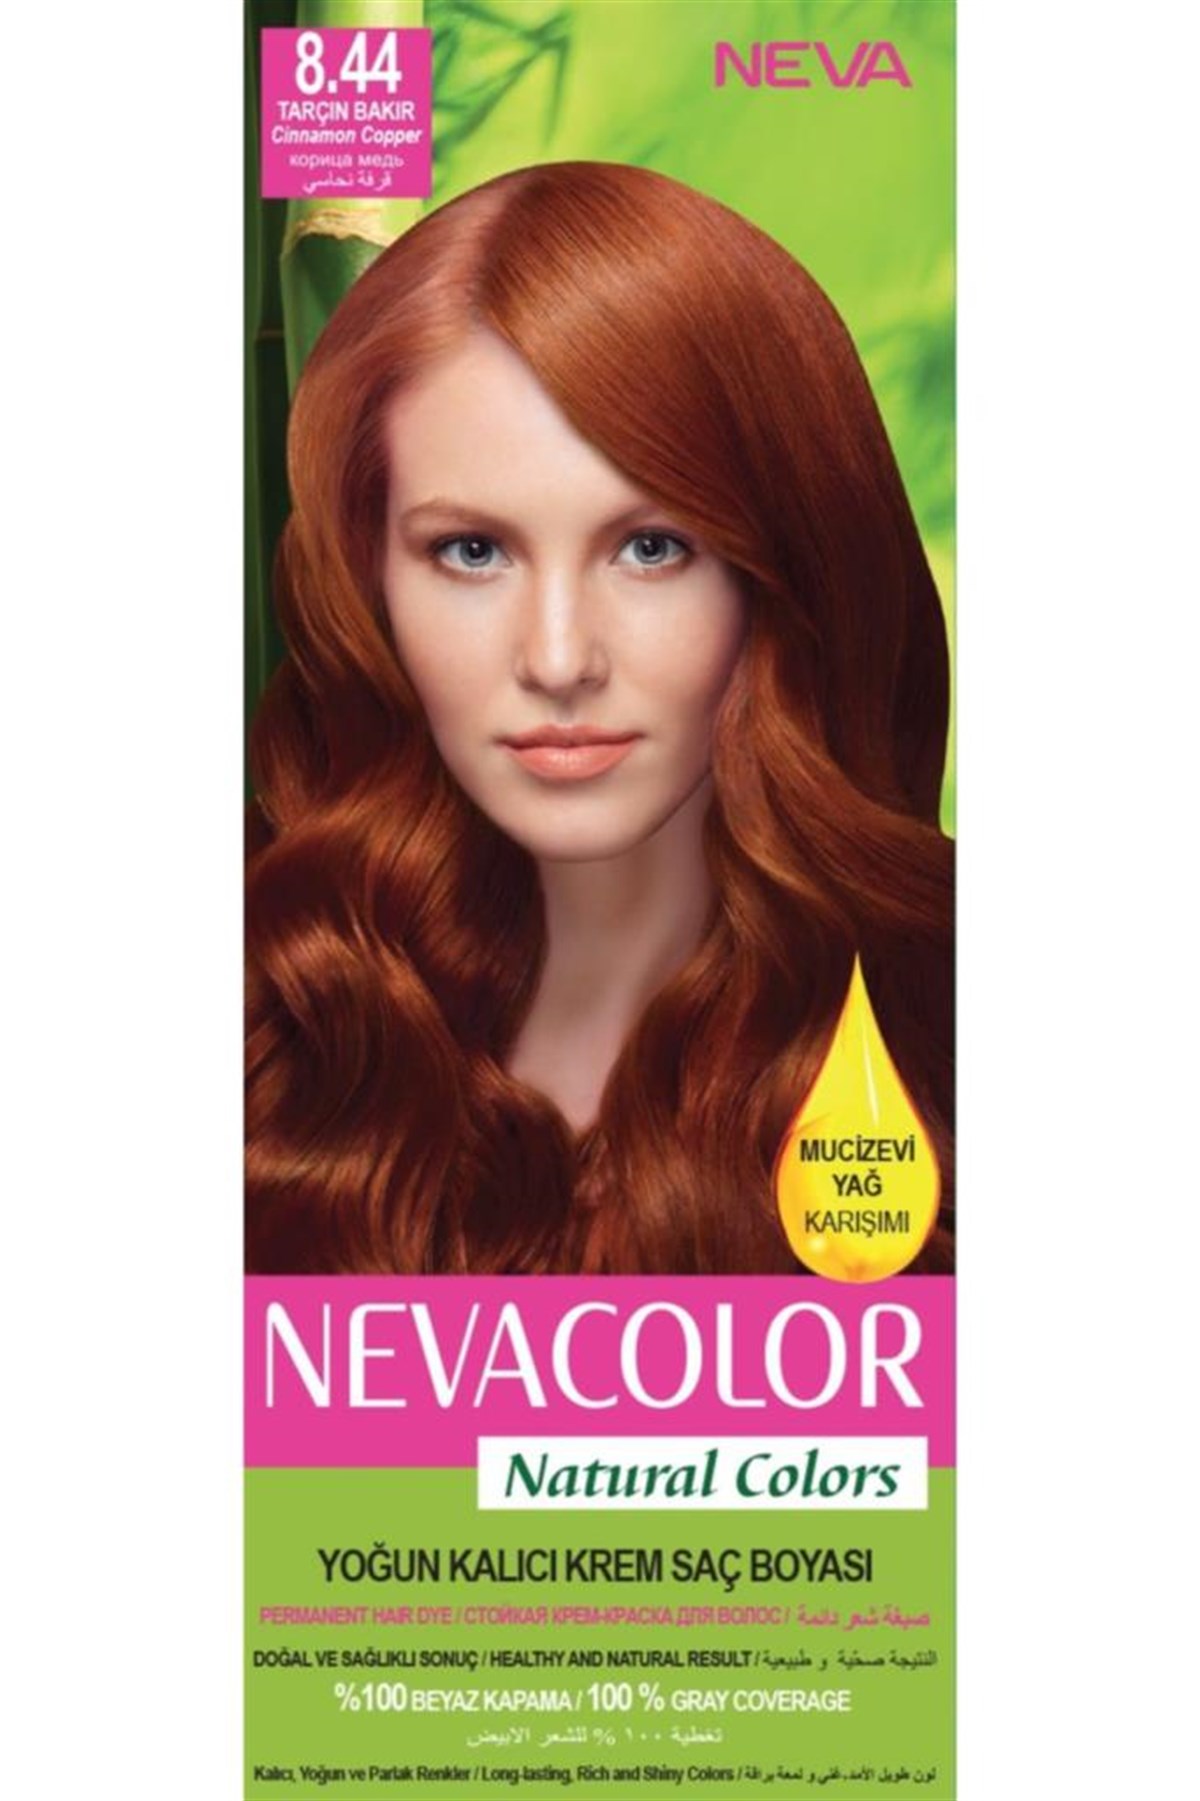 Neva Color Saç Boyası Seti 8.44 Tarçın Bakır | Cossta Cosmetic Station